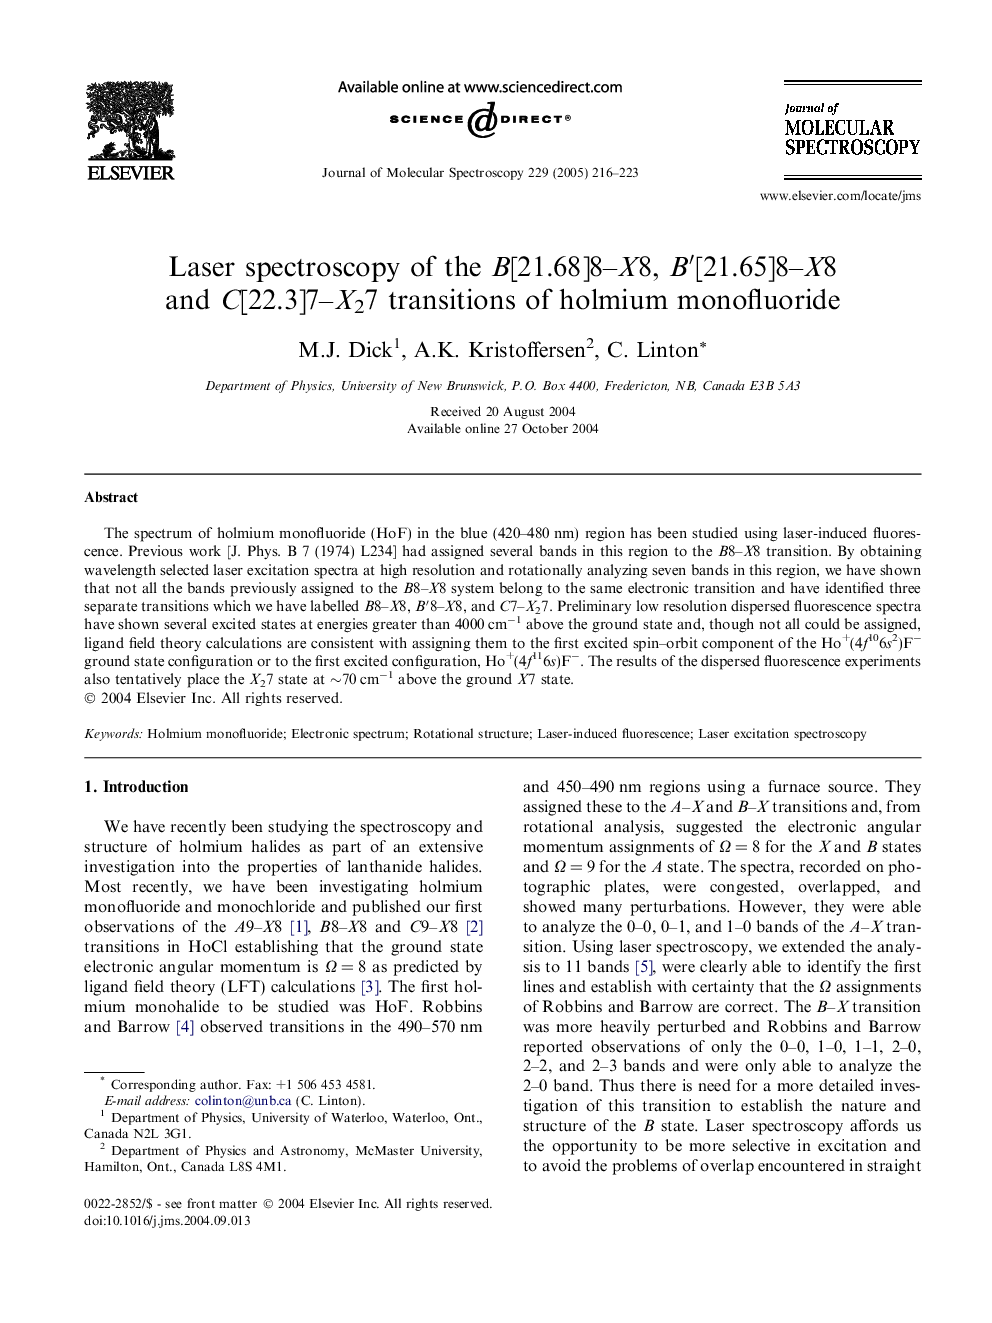 Laser spectroscopy of the B[21.68]8-X8, Bâ²[21.65]8-X8 and C[22.3]7-X27 transitions of holmium monofluoride